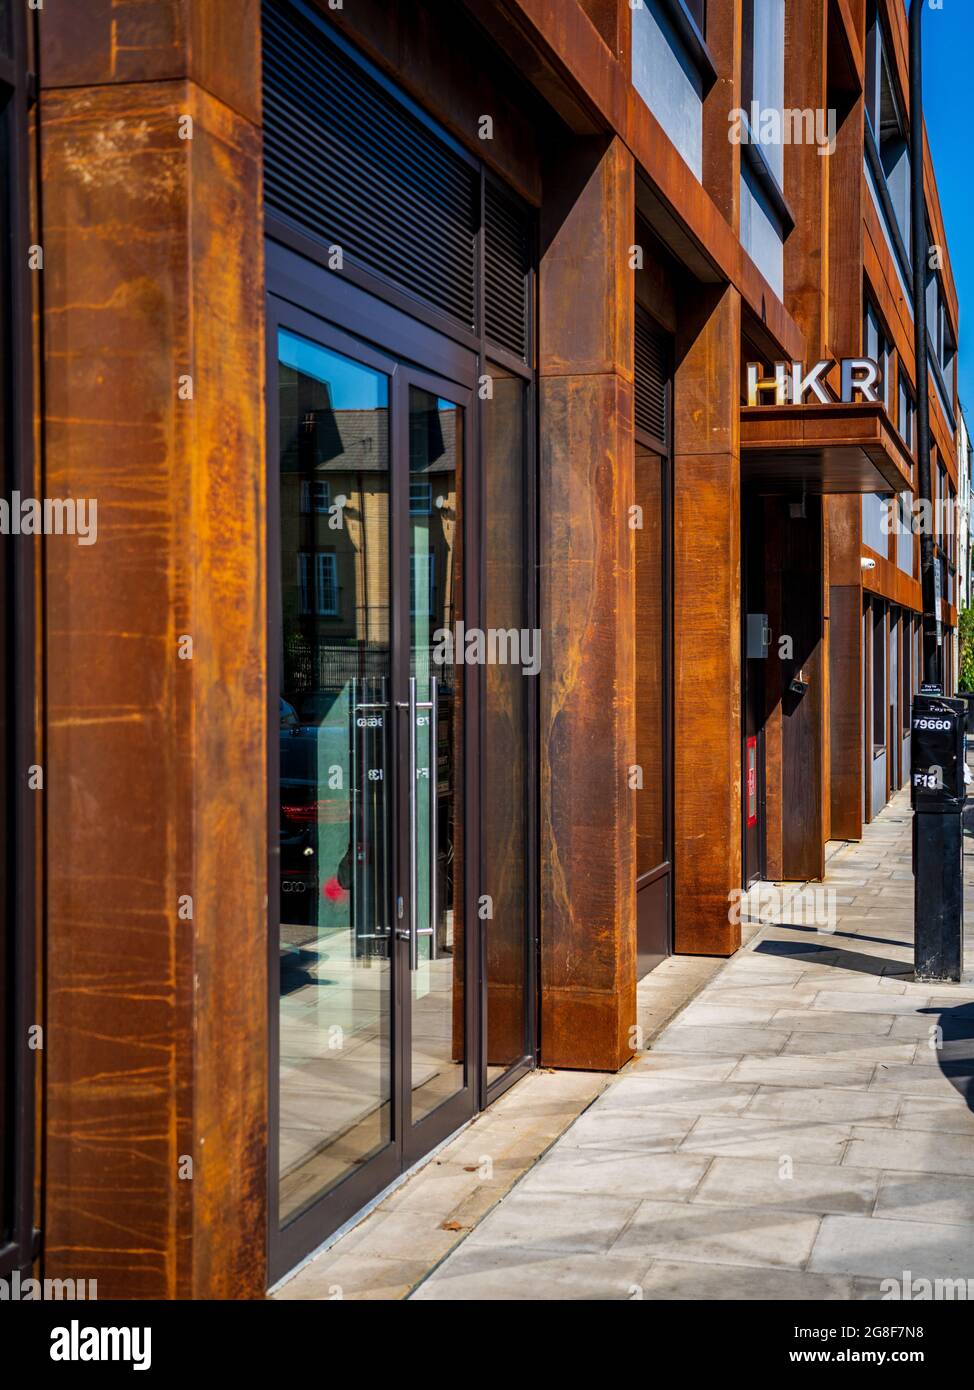 HKR Hoxton London - Luxuriöses Apartmentgebäude in London, fertiggestellt 2020 Architekt Hawkins Brown Architects. Stockfoto